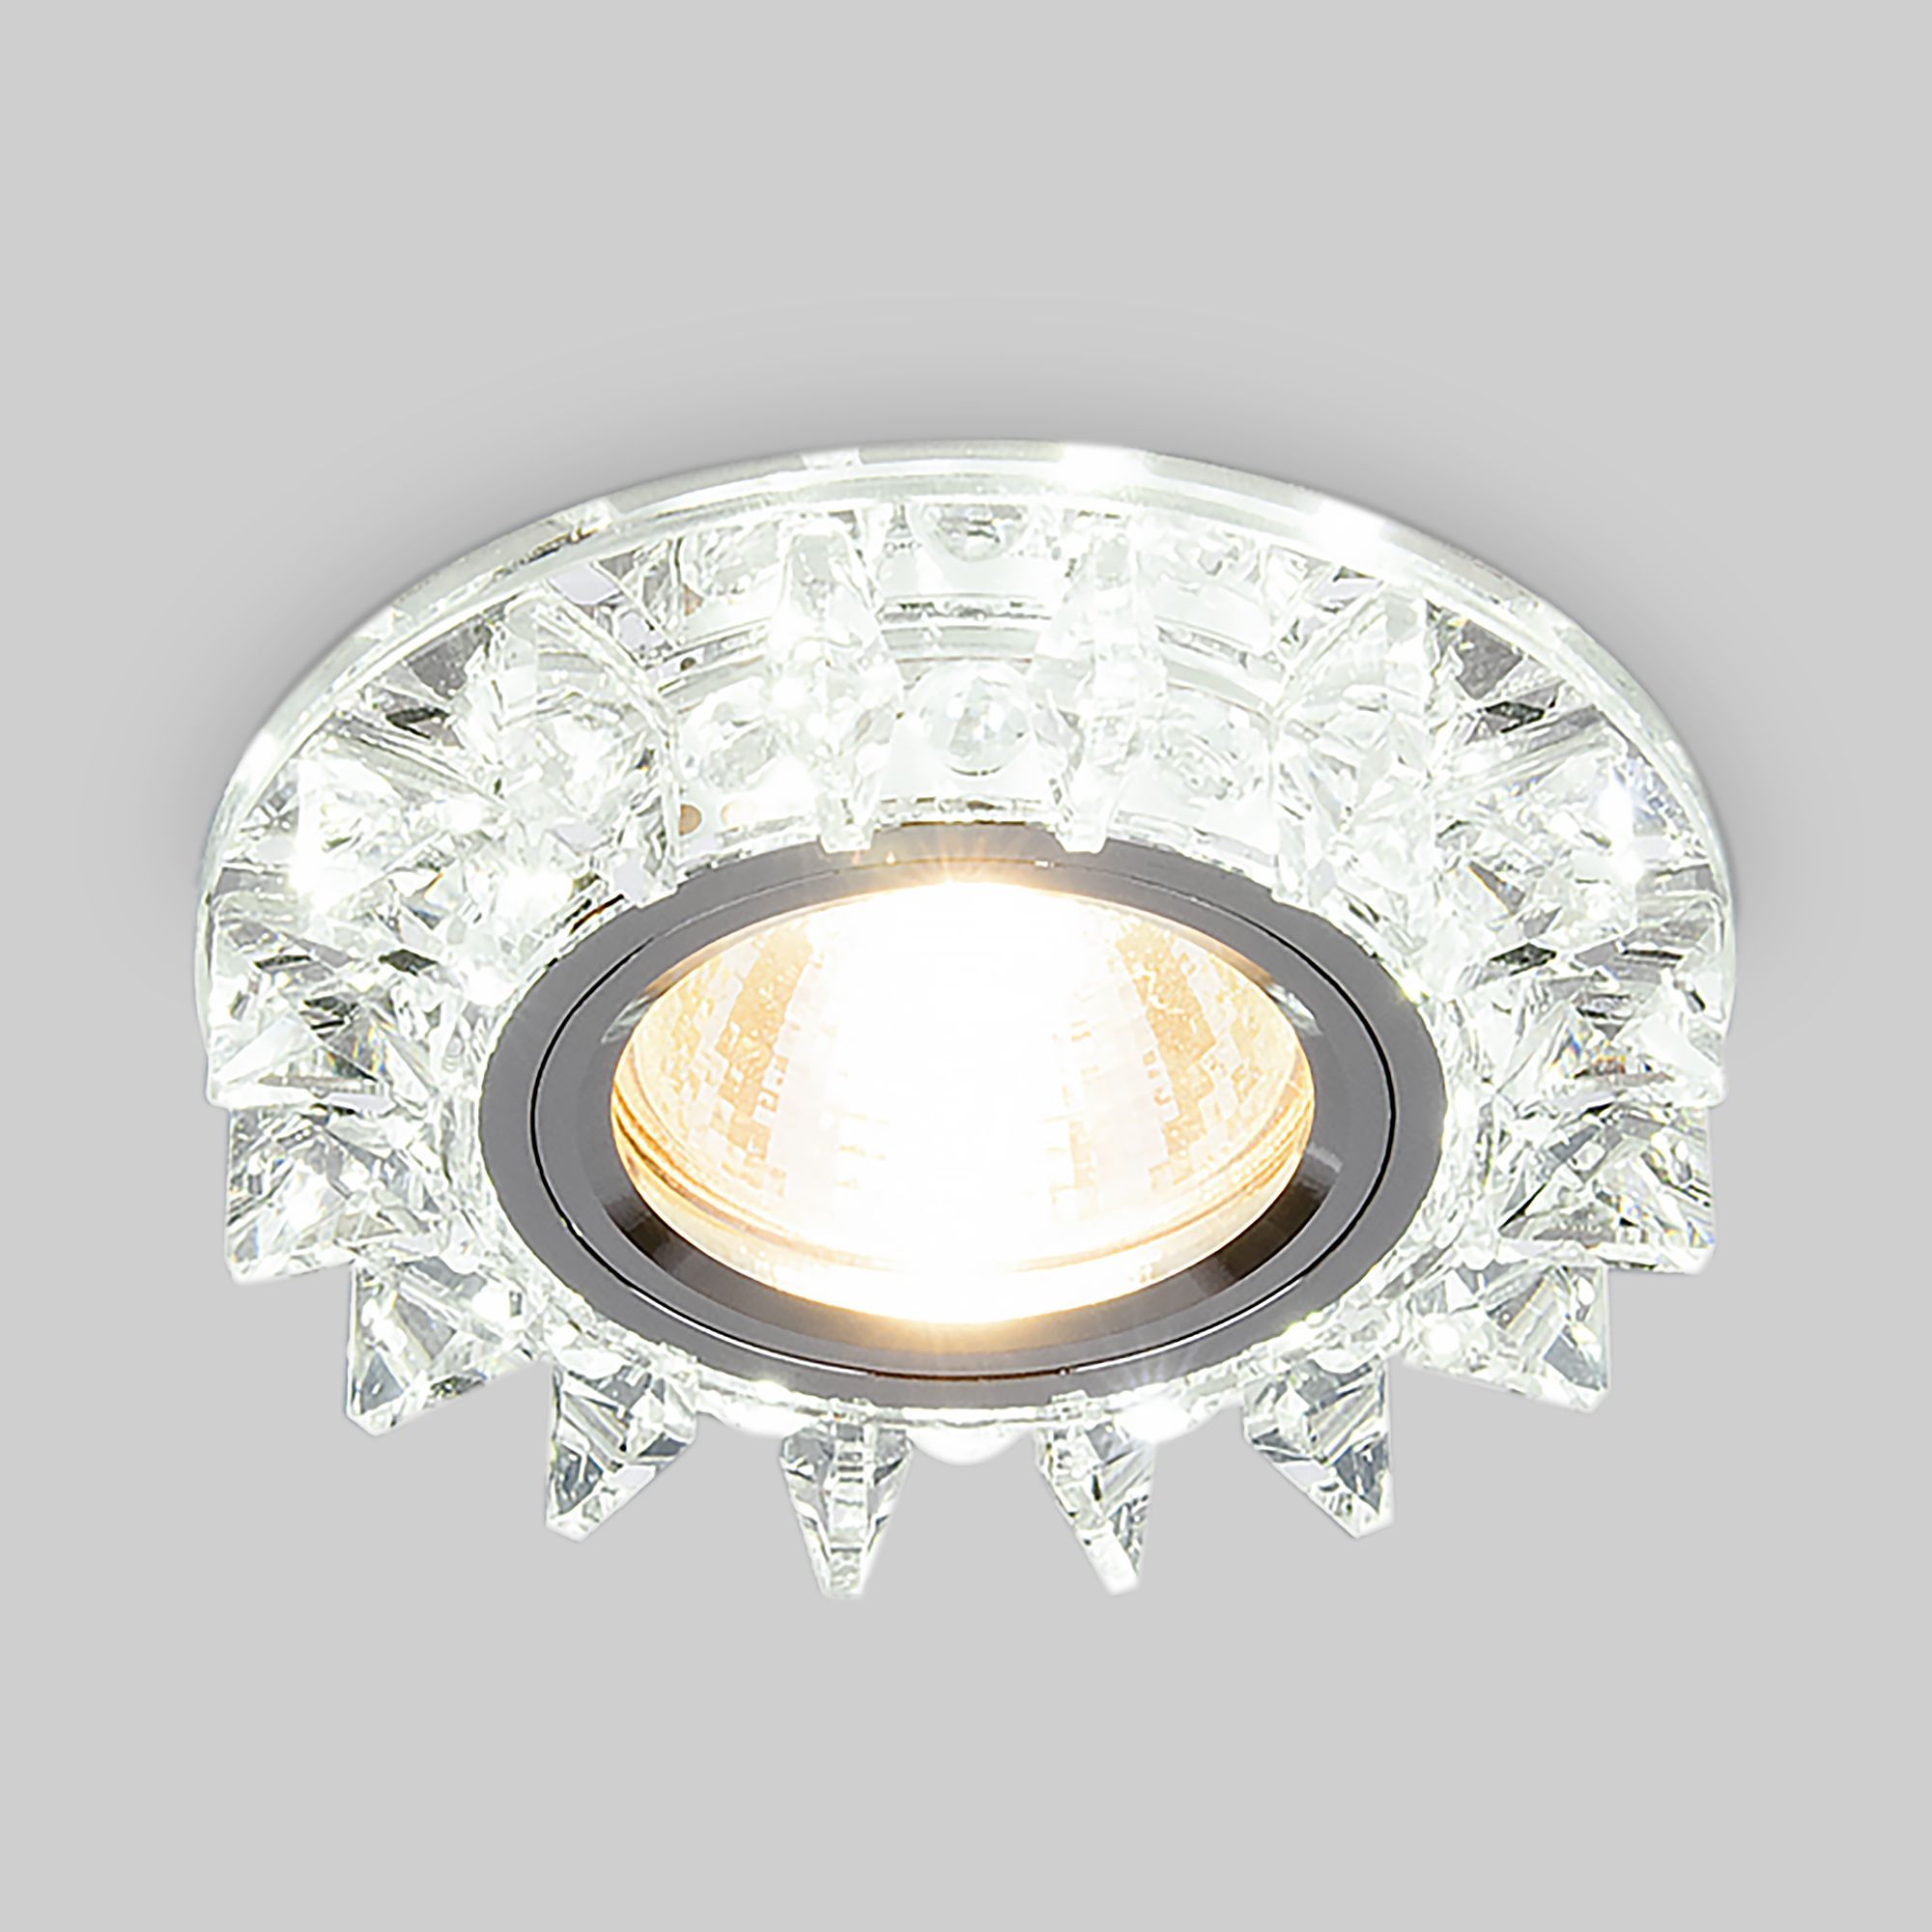 Точечный светильник с LED подсветкой 6037 MR16  SL зеркальный/серебро